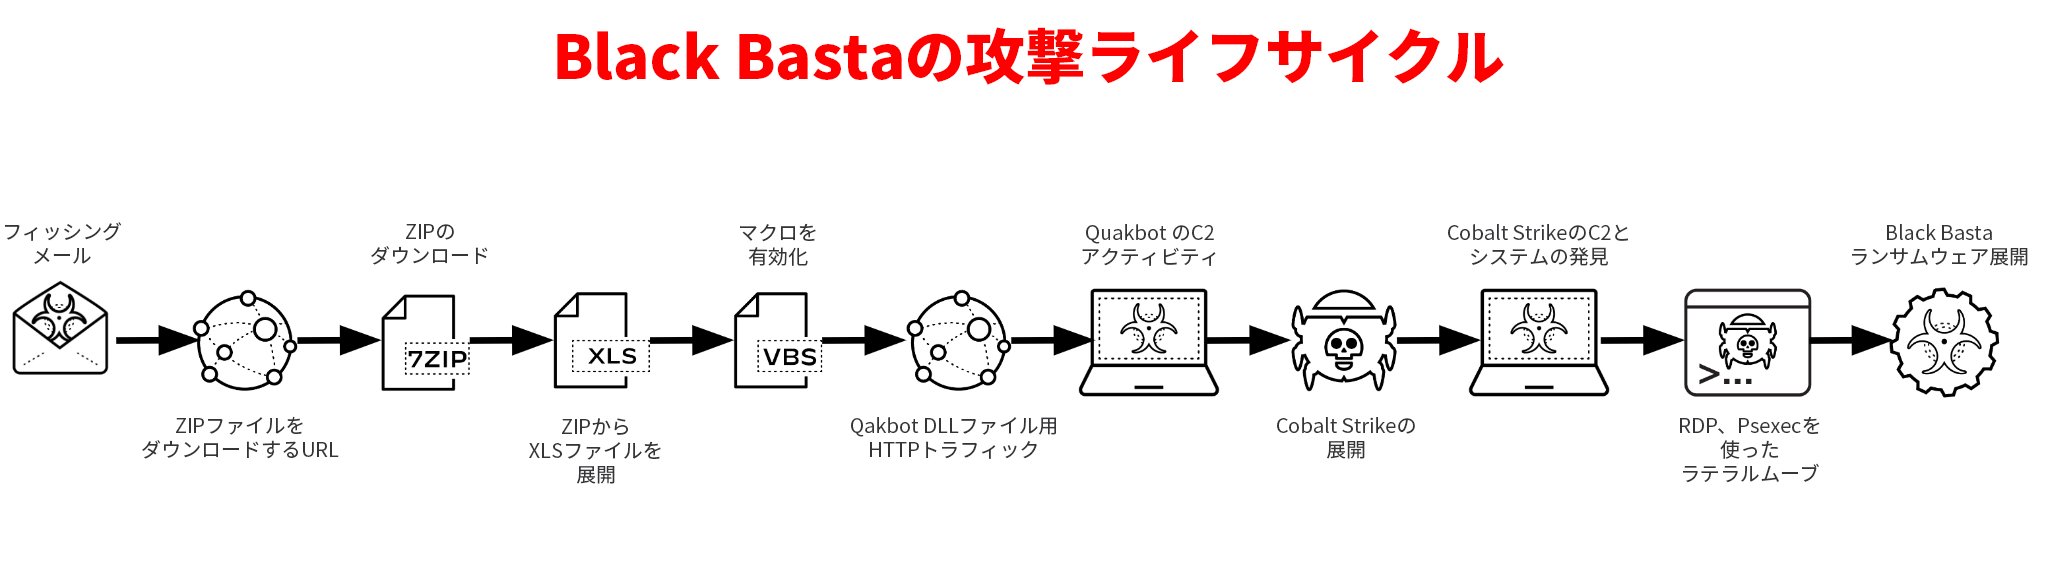 図1はUnit 42のインシデントレスポンス事例に基づくBlack Bastaの攻撃ライフサイクルを示したものです。フィッシングメールには、ZIPファイルかURLかが含まれています。ZIPファイルはXLSファイルをダウンロードして展開します。マクロによりQAKBOT DLLファイルのHTTPトラフィックが有効になります。QAKBOTのC2活動はCobalt strikeを展開します。これにより、RDPかPsexecを使ってシステム発見やラテラルムーブを行えるようにします。最終的にBlack Bastaランサムウェアが展開されます。